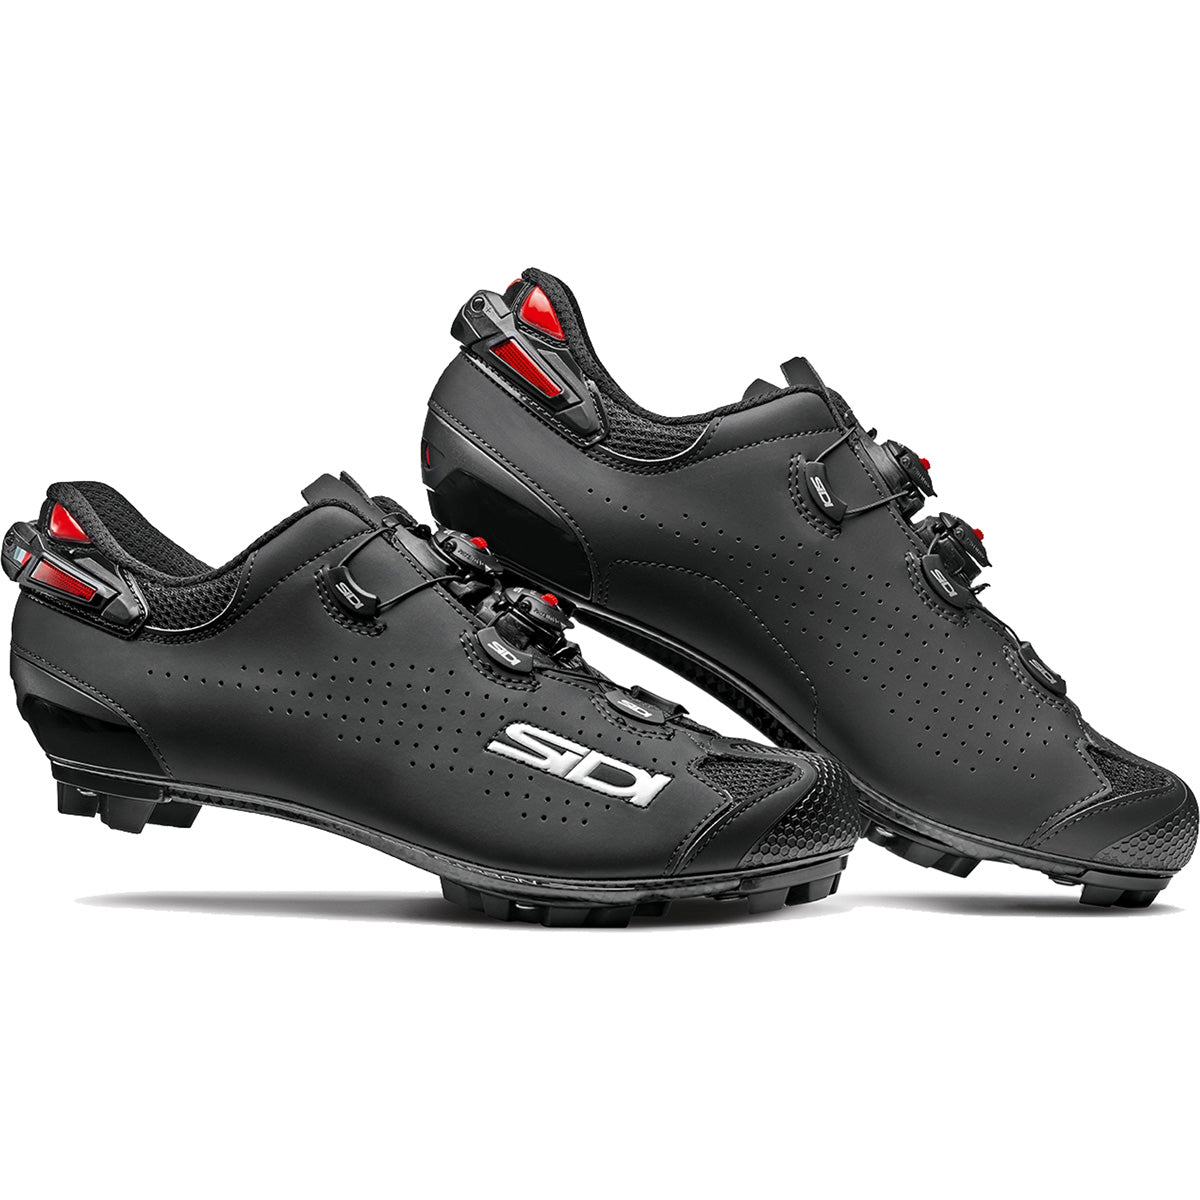 Sidi Tiger 2 Mountain Bike Shoes CLOSEOUT - Matte Black/Black